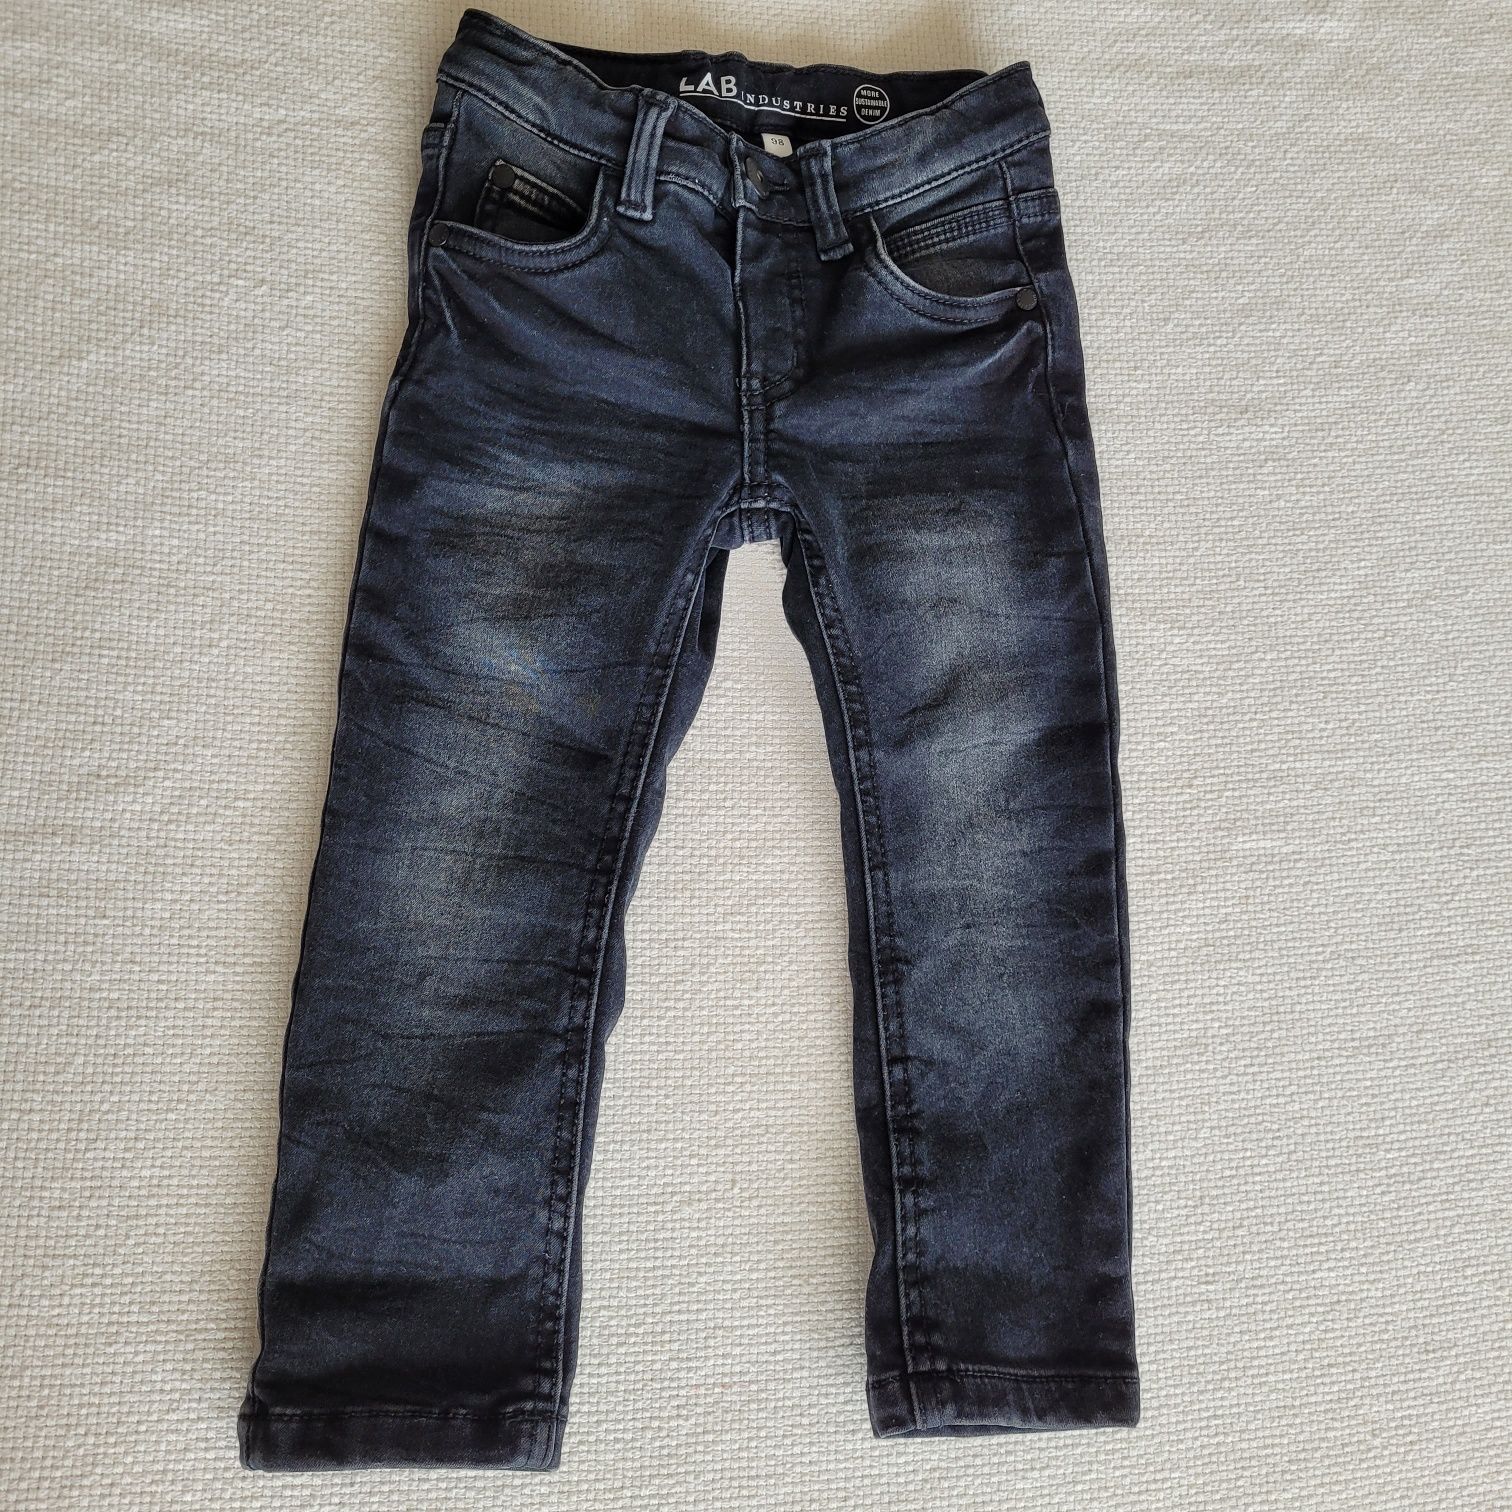 Spodnie jeans skinny lab industries kappahl 98 czarne szare